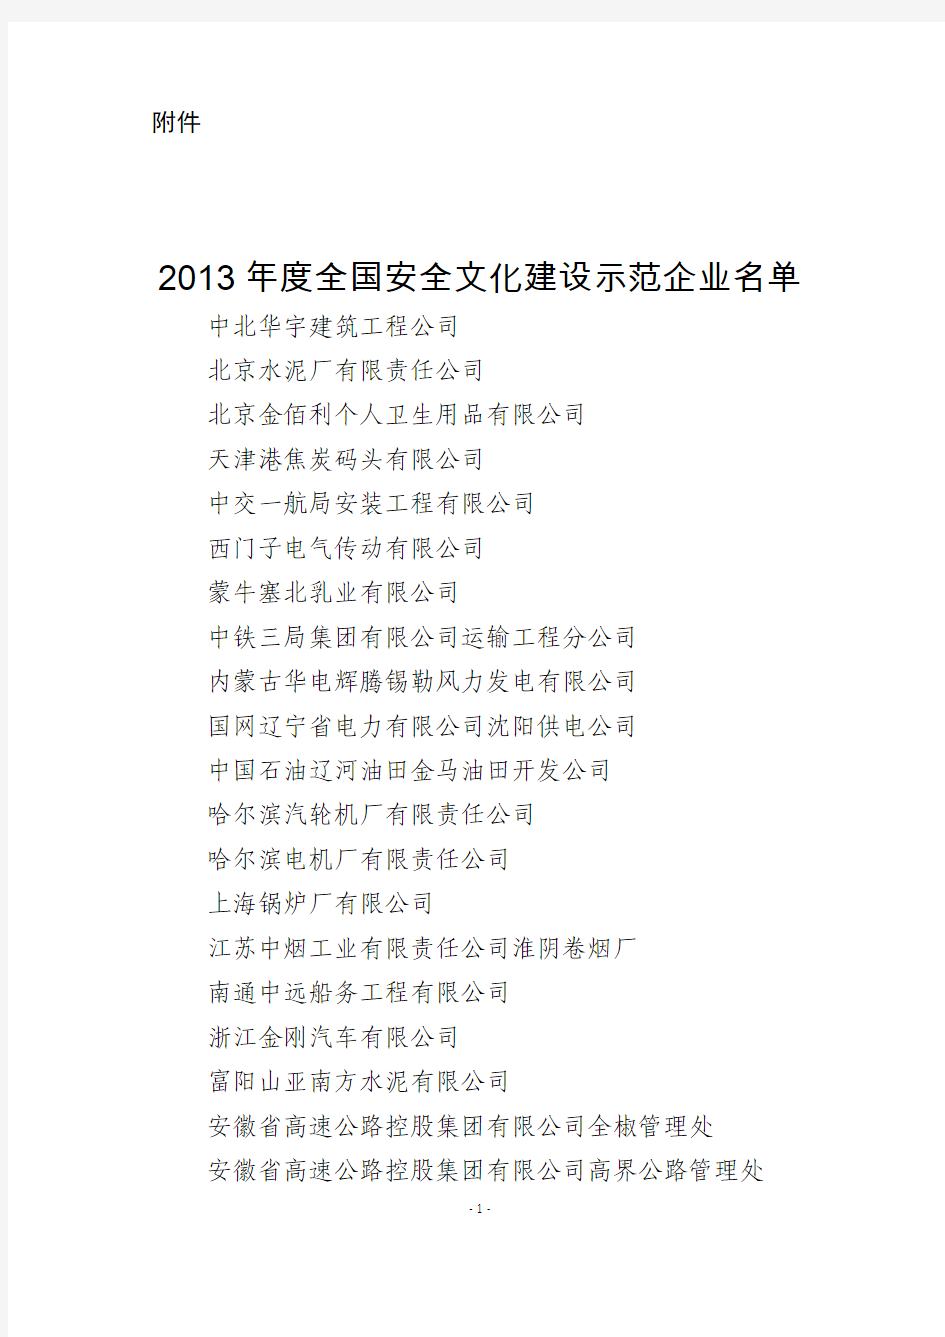 2013年度全国安全文化建设示范企业名单